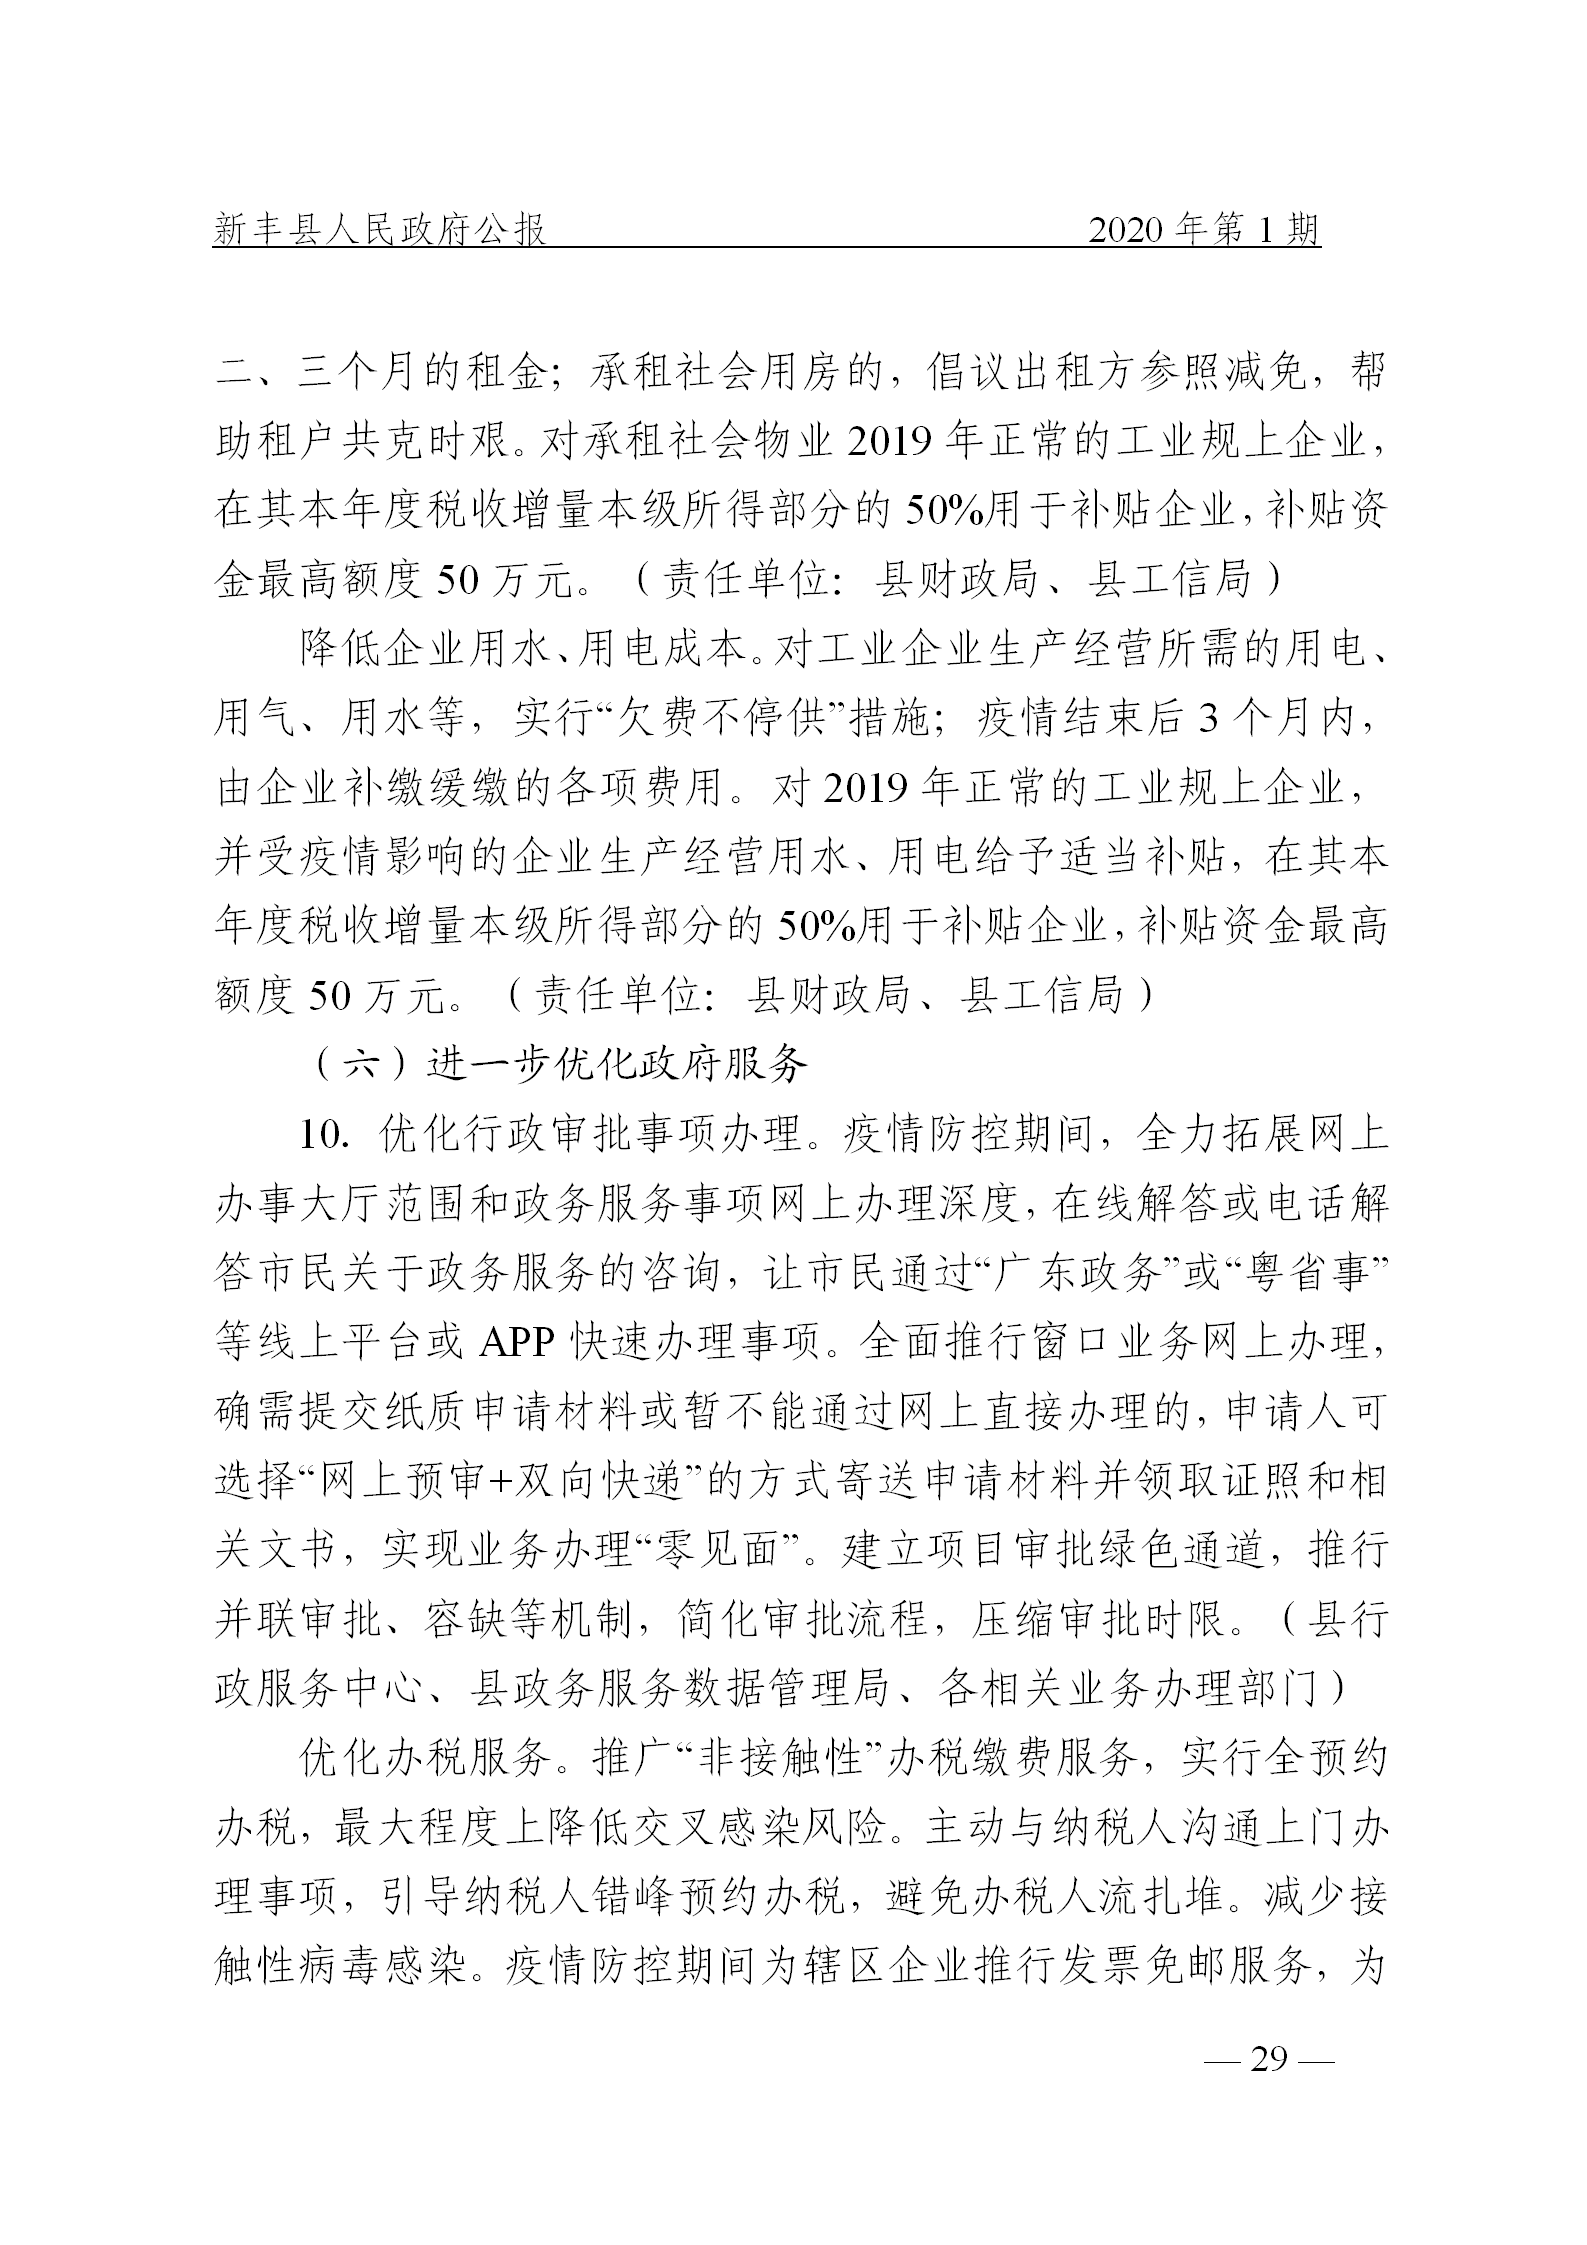 《新丰县人民政府公报》2020年第1期(1)_29.png